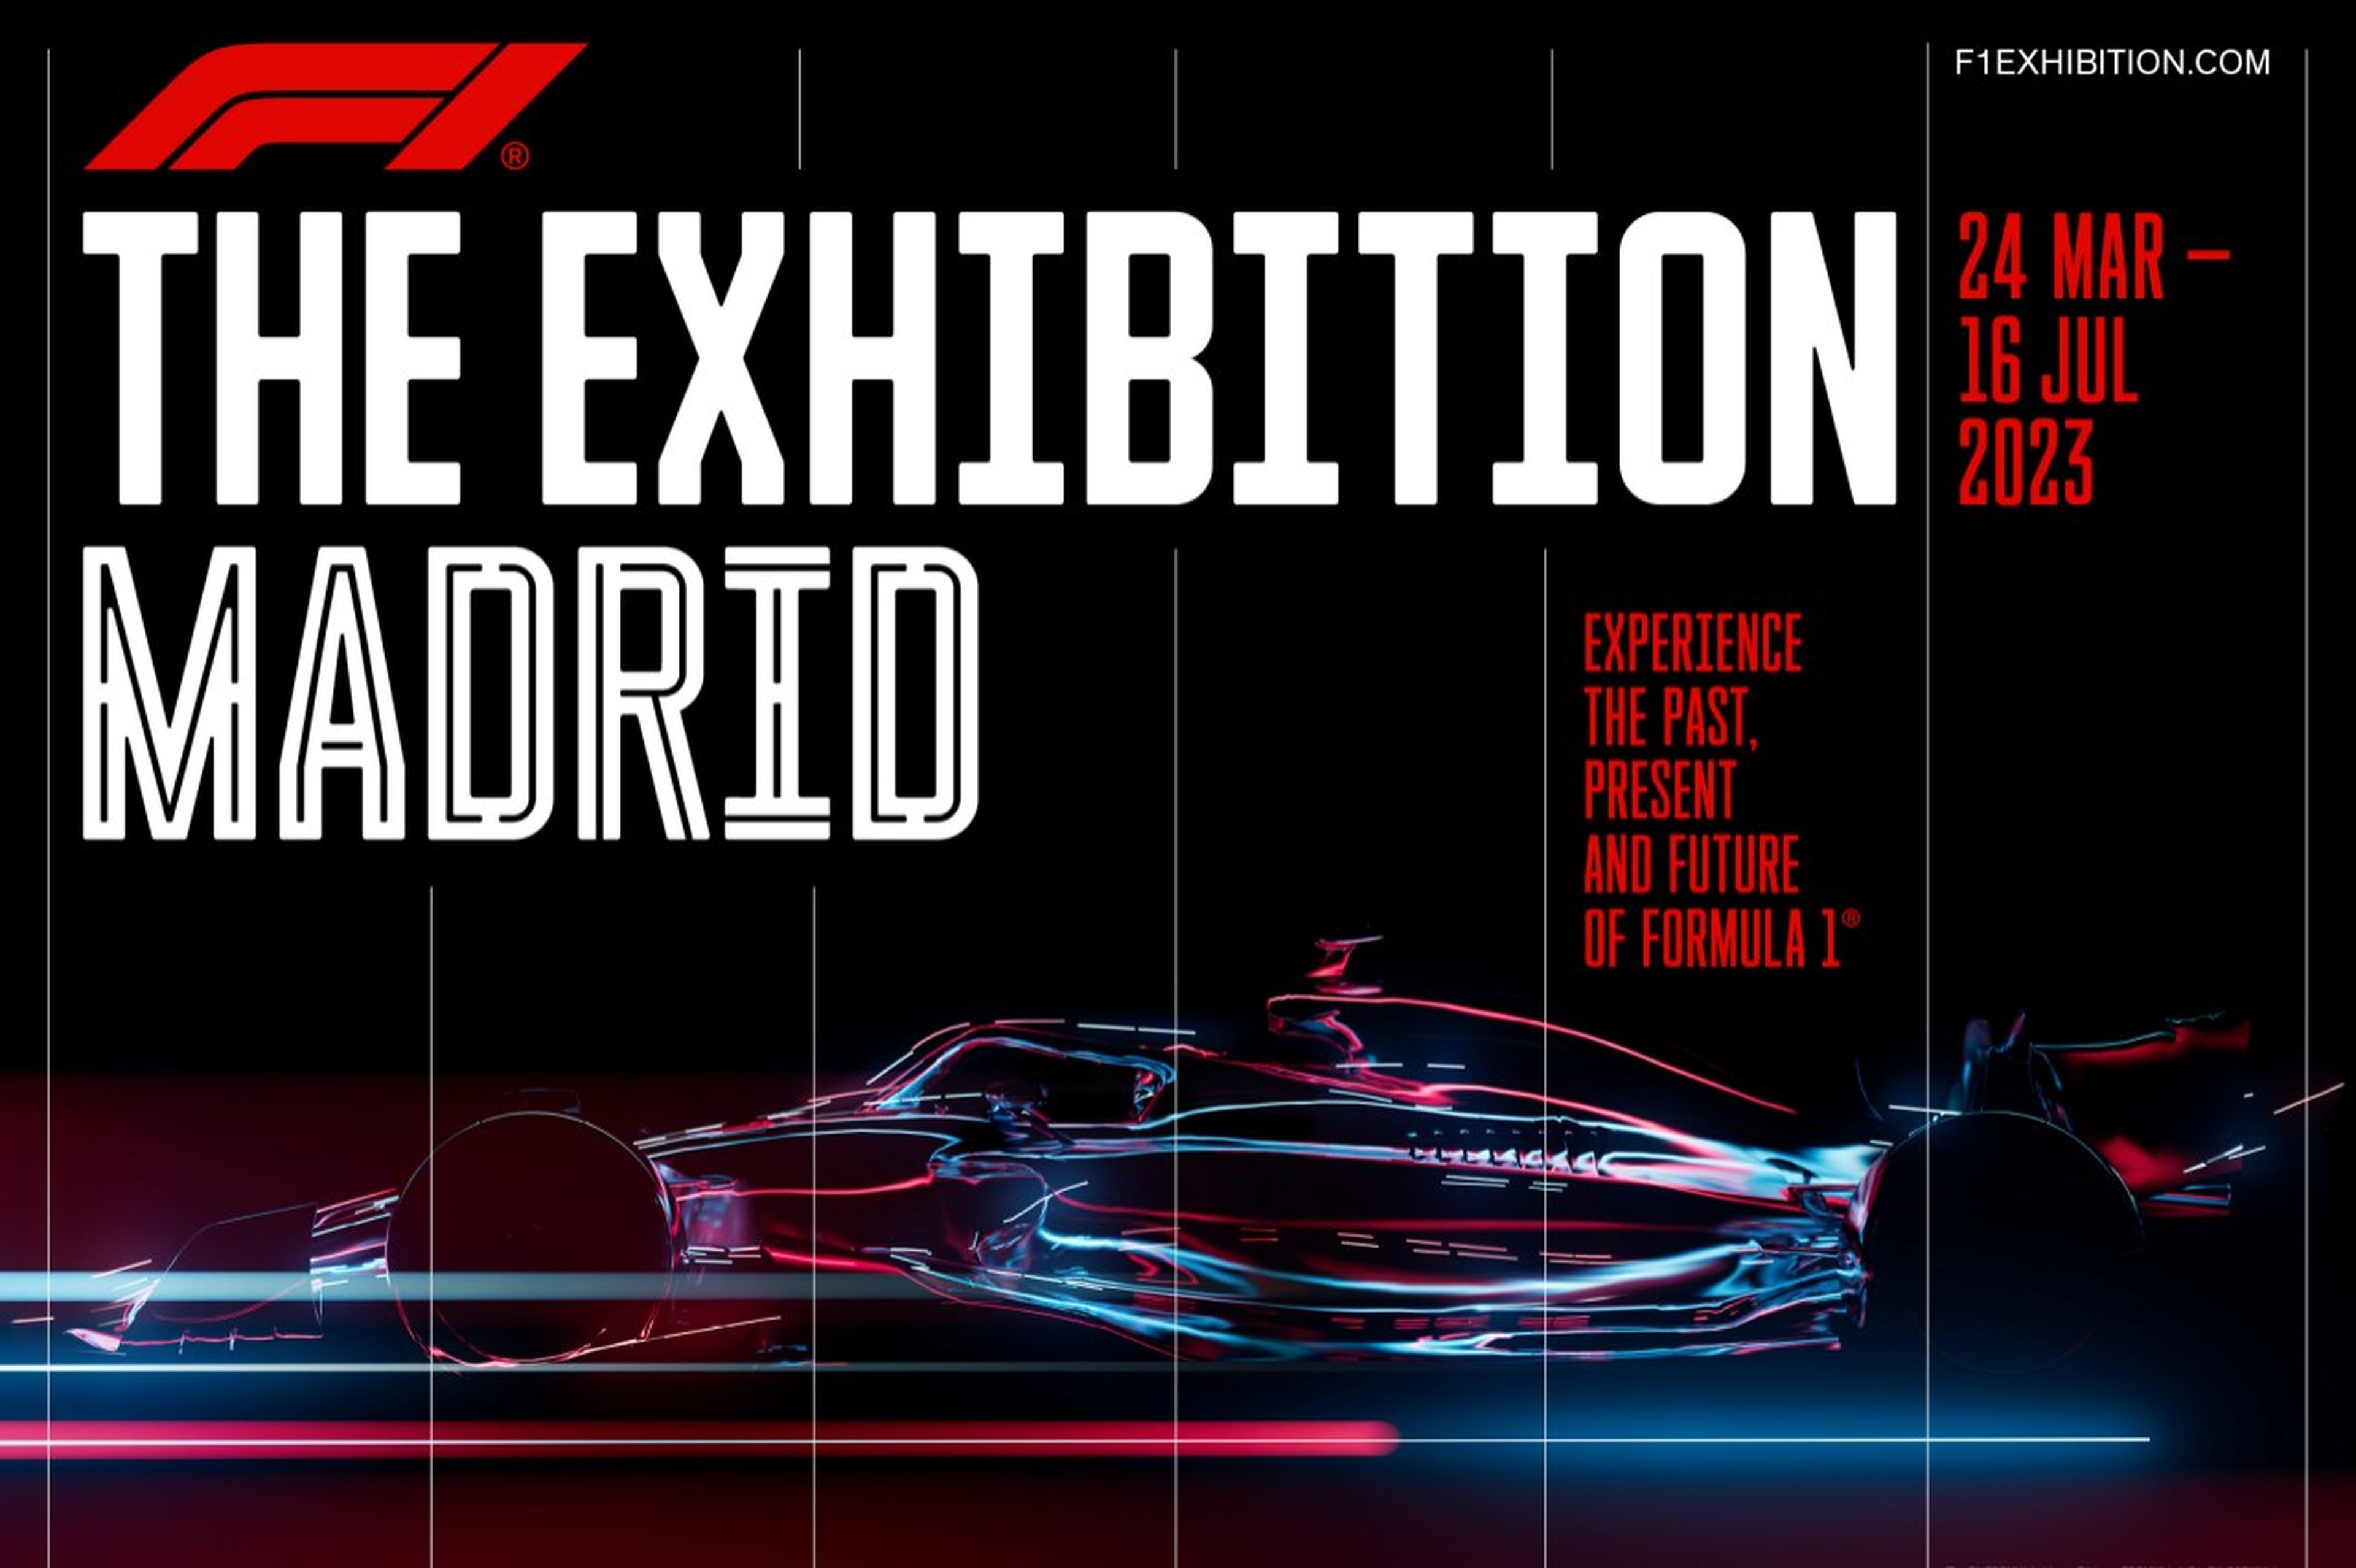 Madrid exhibición F1 2023